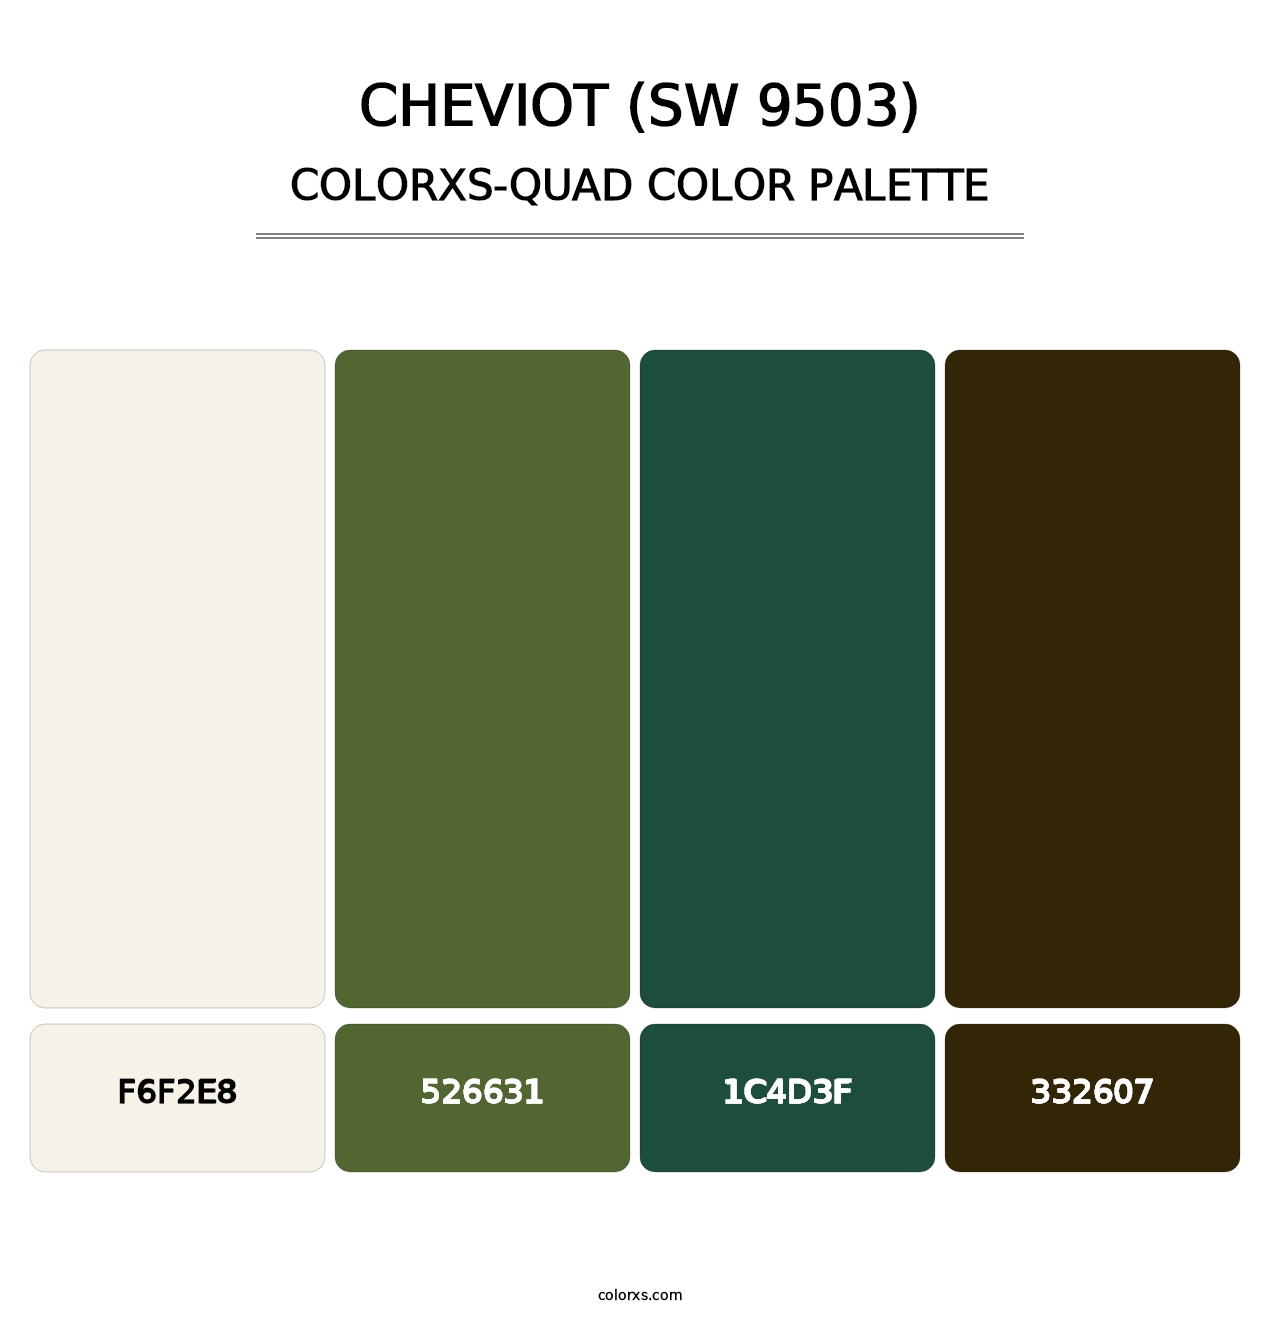 Cheviot (SW 9503) - Colorxs Quad Palette